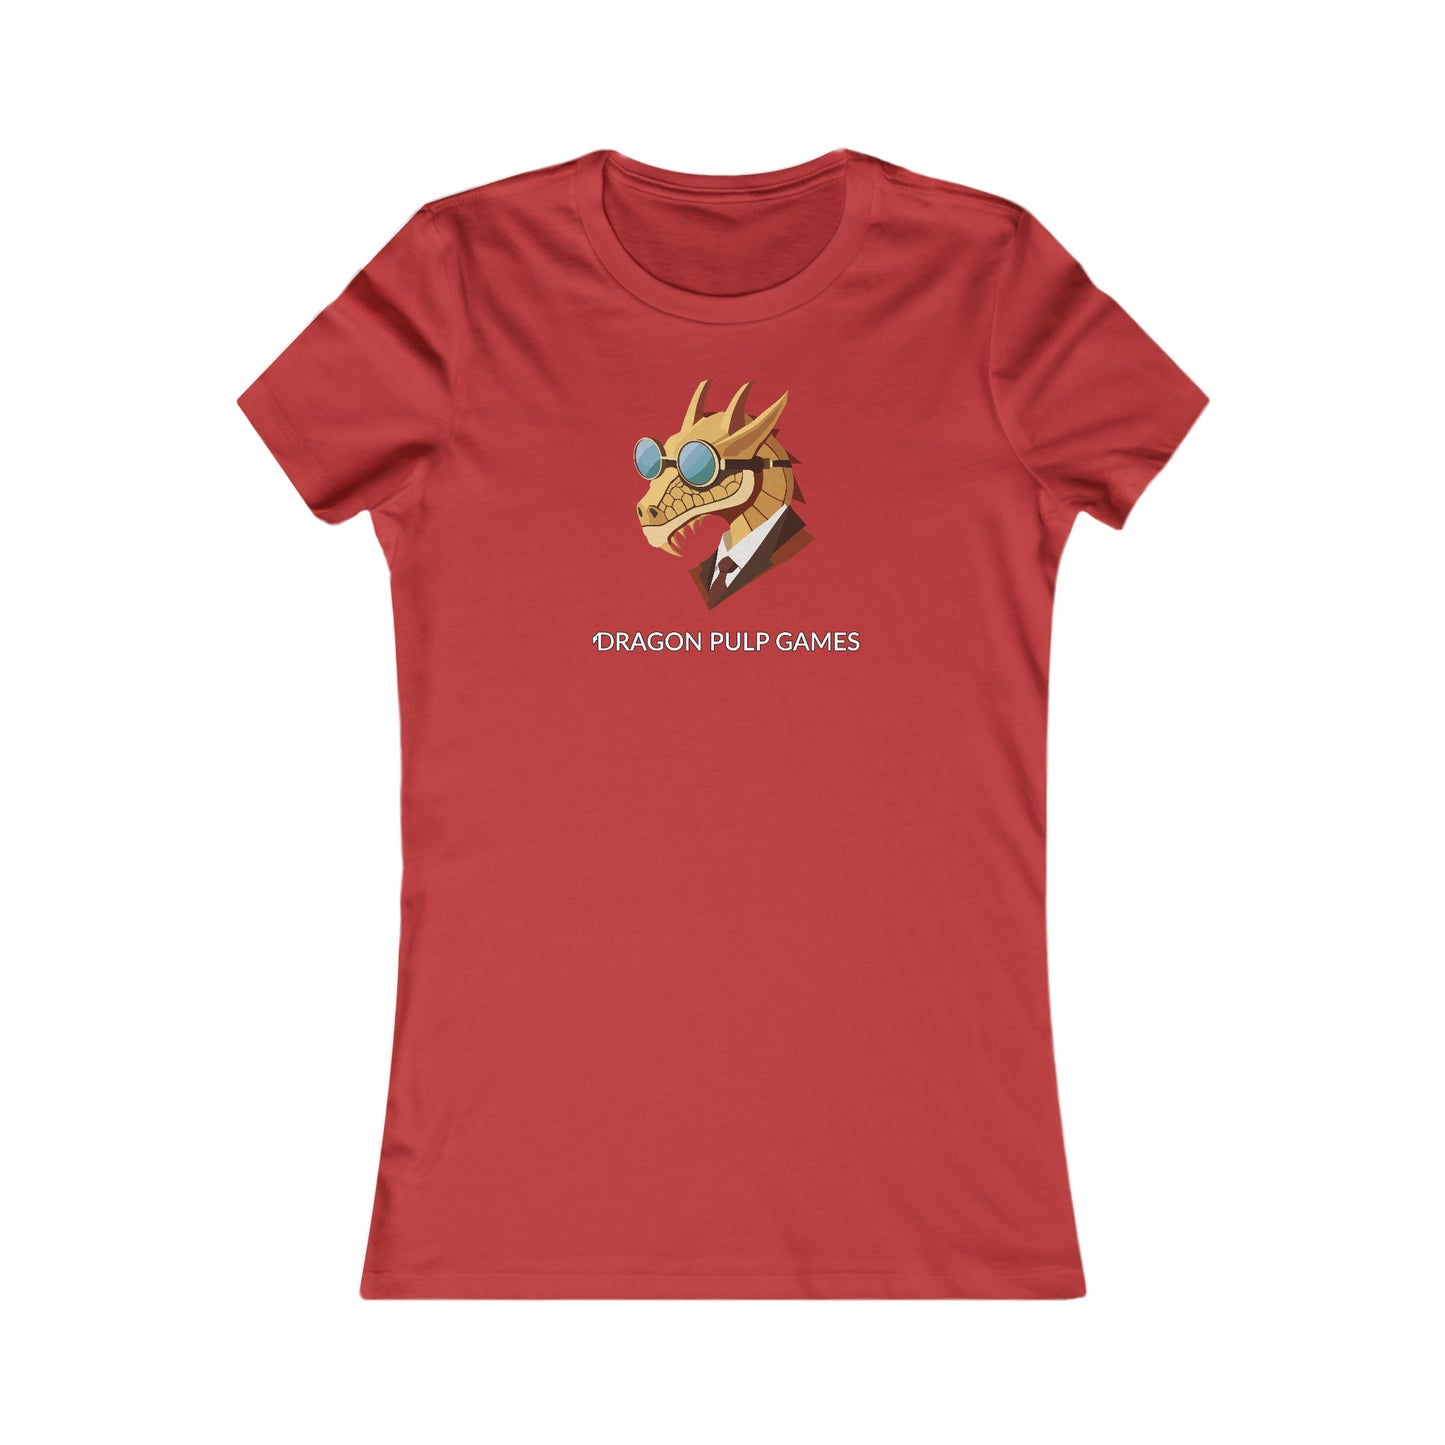 Dragon Pulp Games T-Shirt (Frauen)